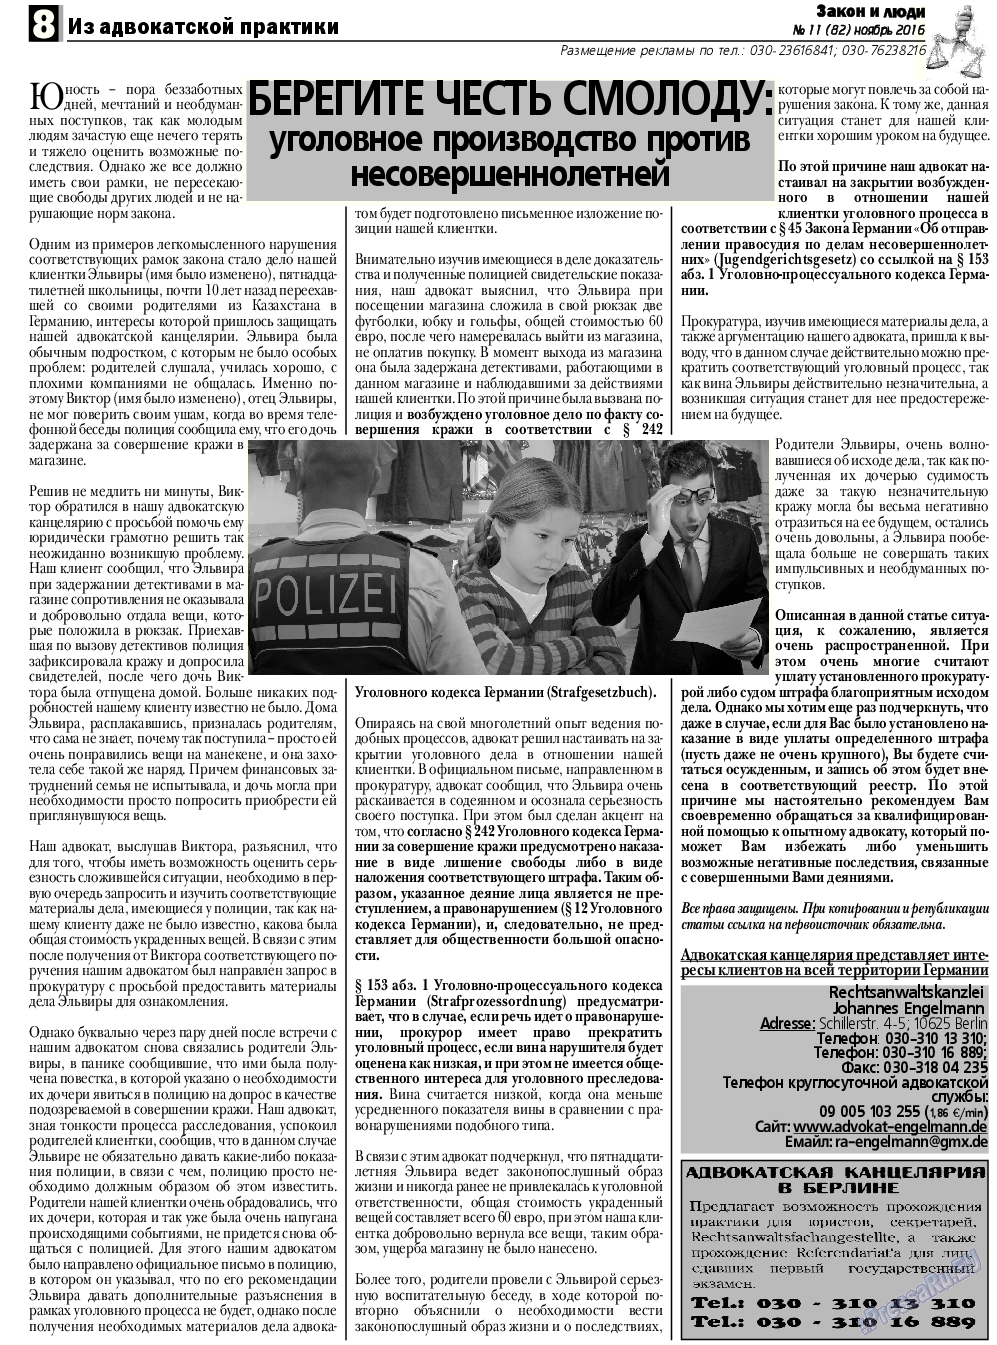 Закон и люди, газета. 2016 №11 стр.8